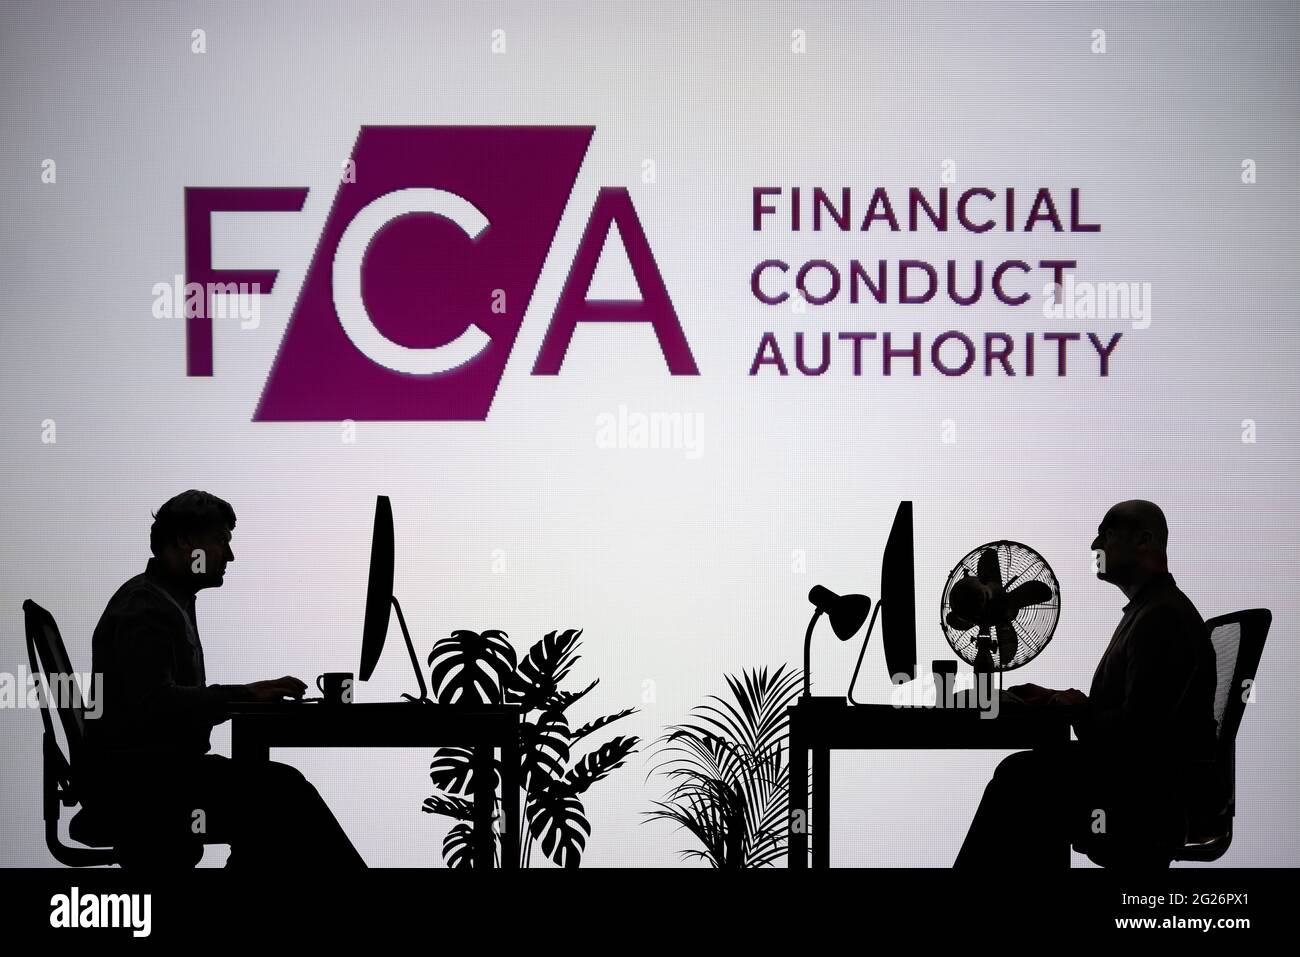 El logotipo de la FCA se ve en una pantalla LED de fondo, mientras que dos personas con siluetas trabajan en un entorno de oficina (sólo para uso editorial) Foto de stock